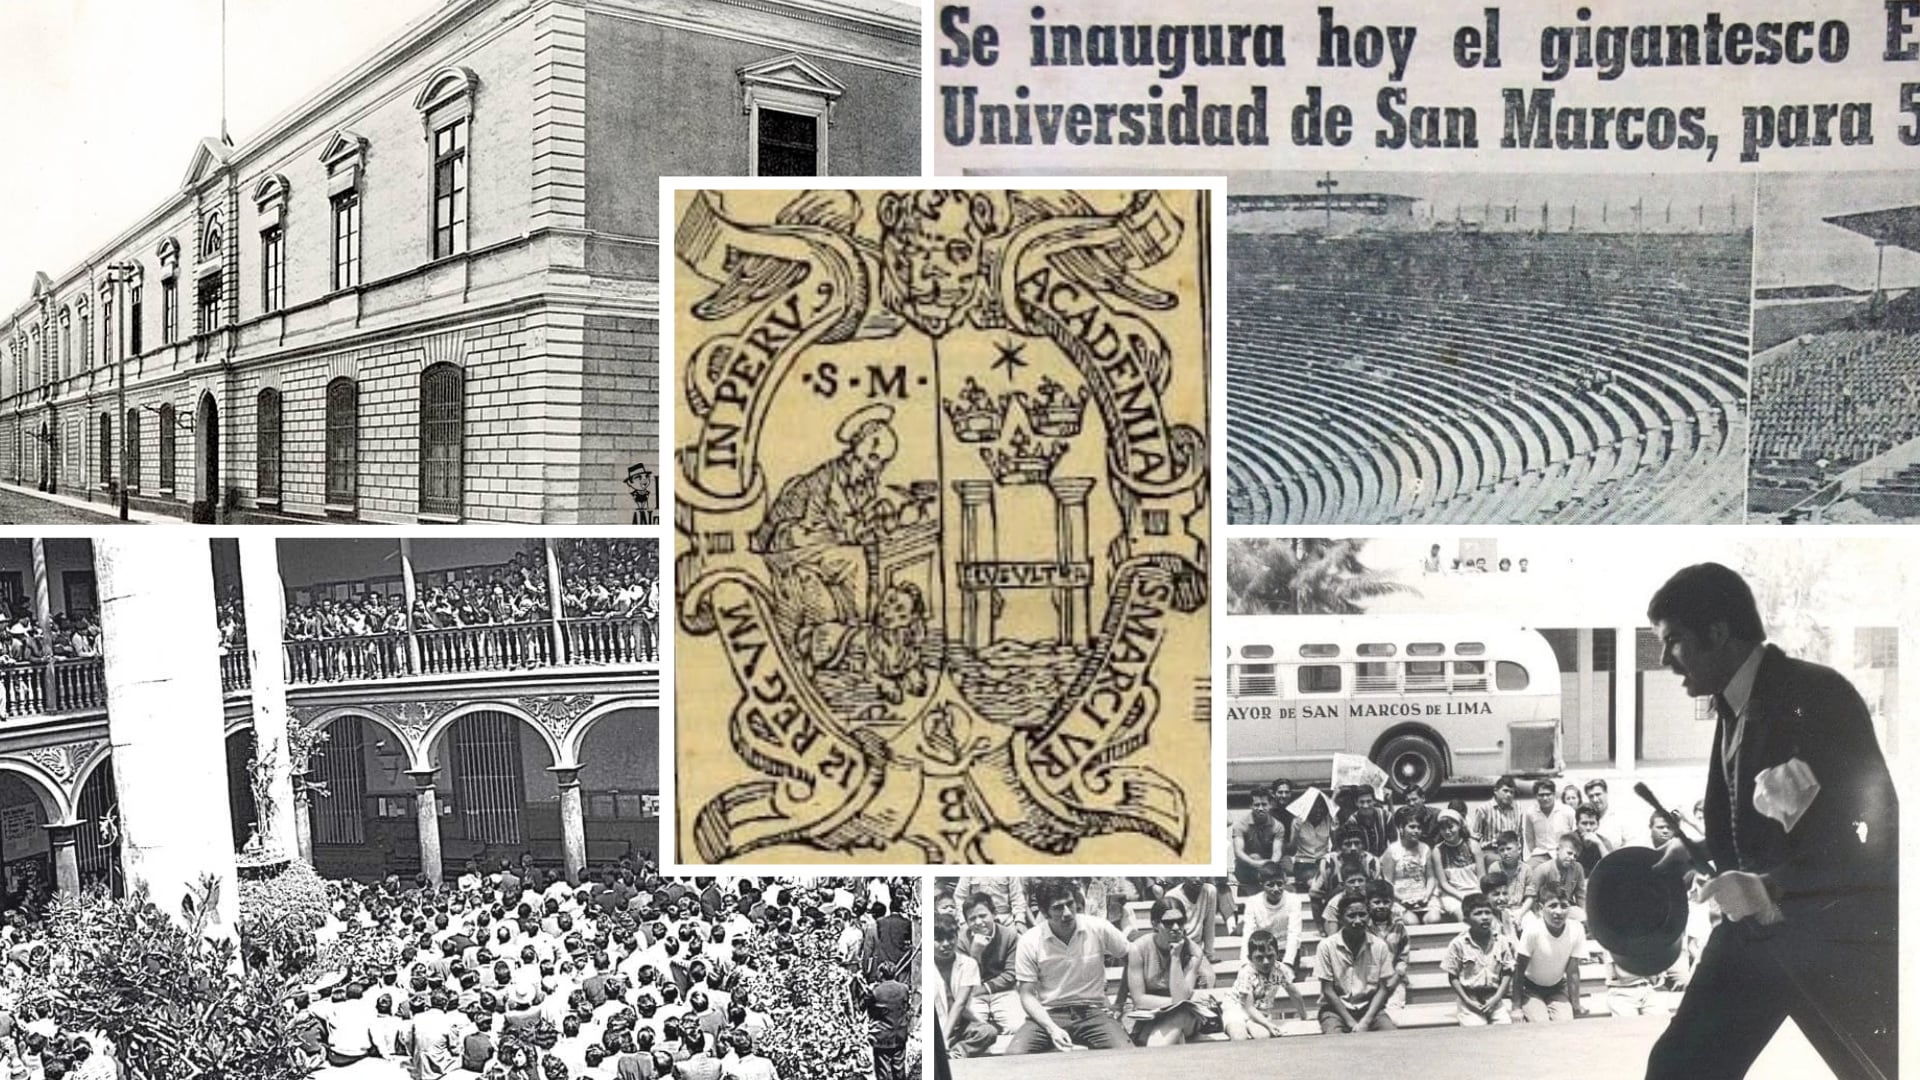 Aniversario de San Marcos - Universidad Nacional Mayor de San Marcos - UNMSM - Perú - 7 de mayo